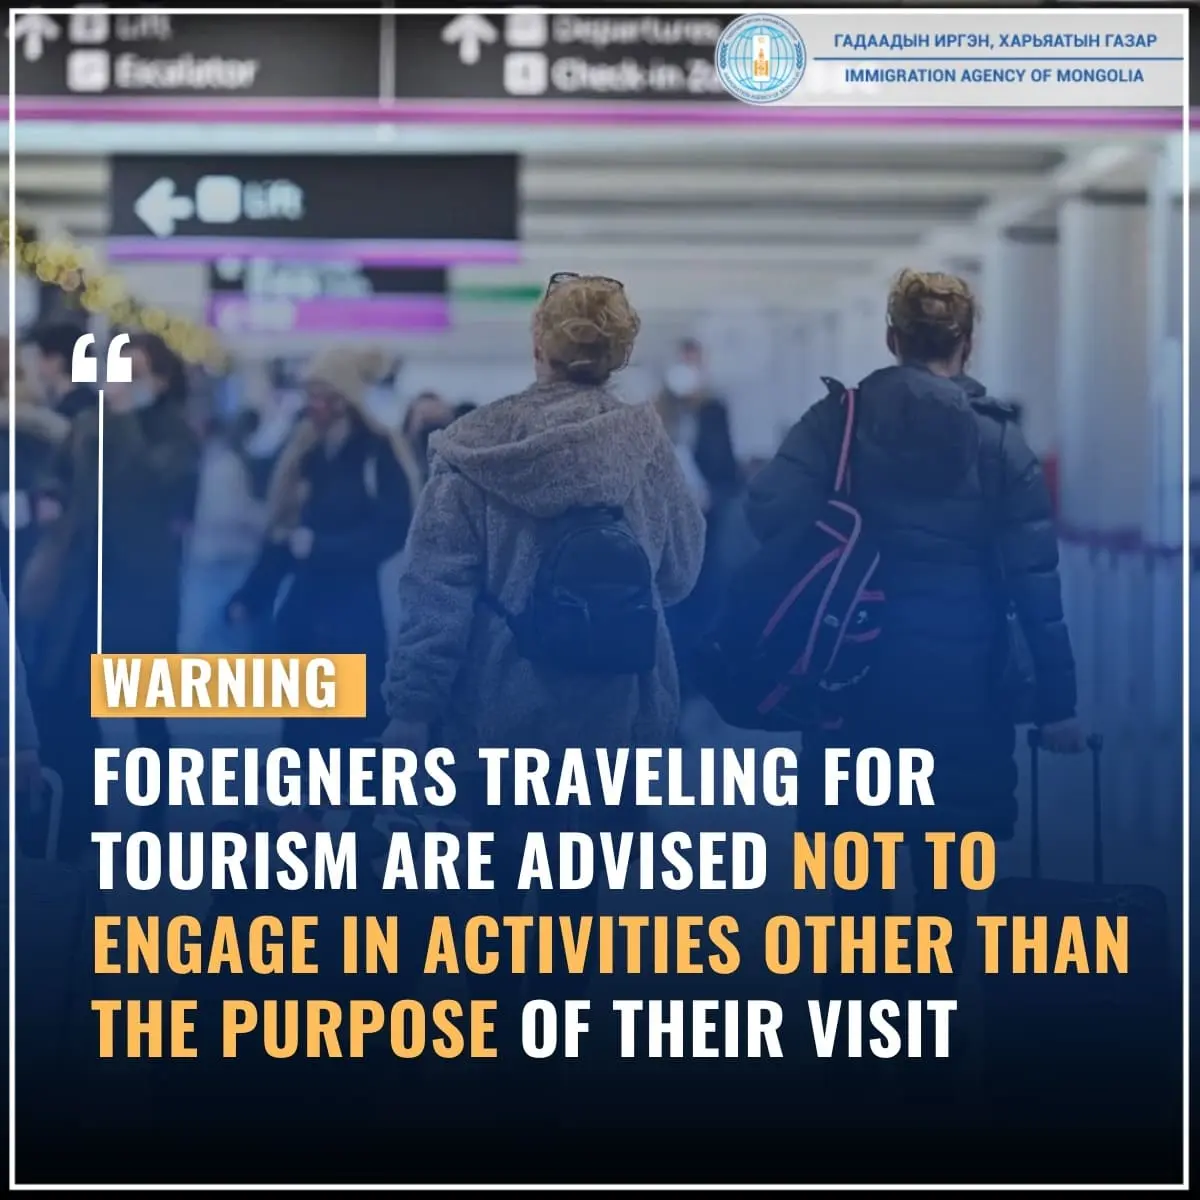 L'Agence de l'Immigration de Mongolie conseille aux étrangers voyageant à des fins touristiques de ne pas se livrer à des activités autres que le but de leur visite.